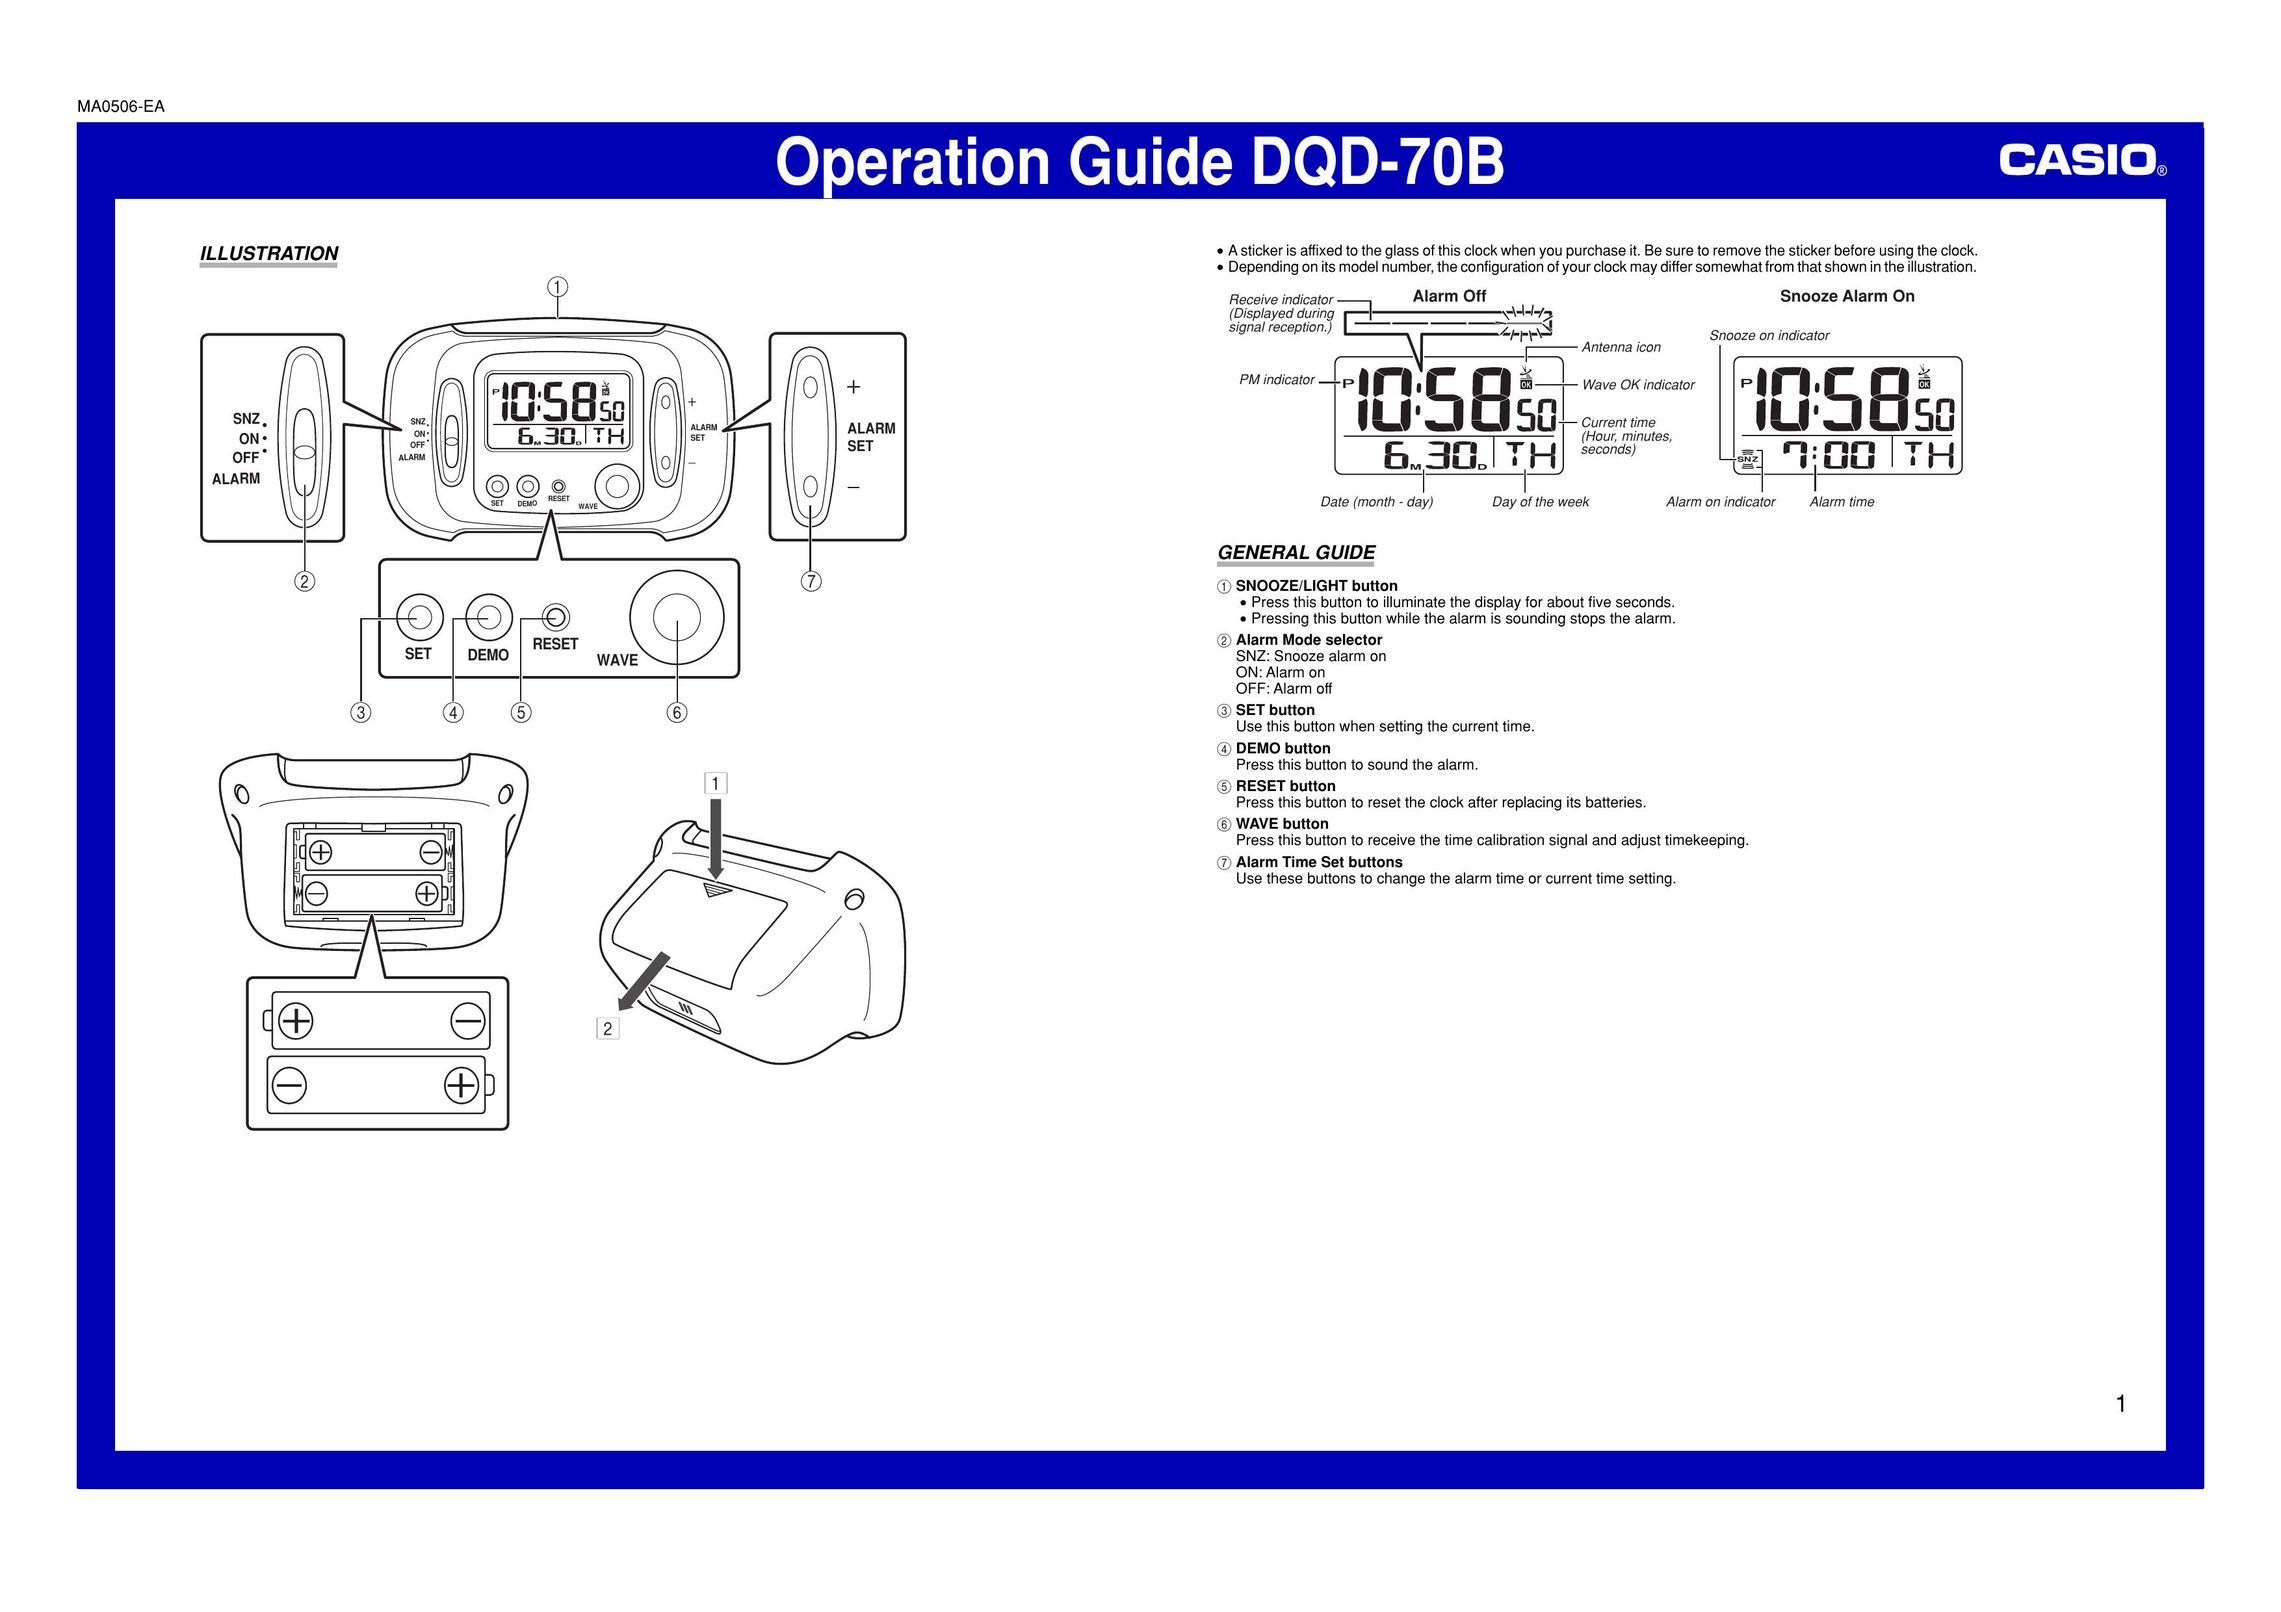 Casio DQD-70B Clock User Manual